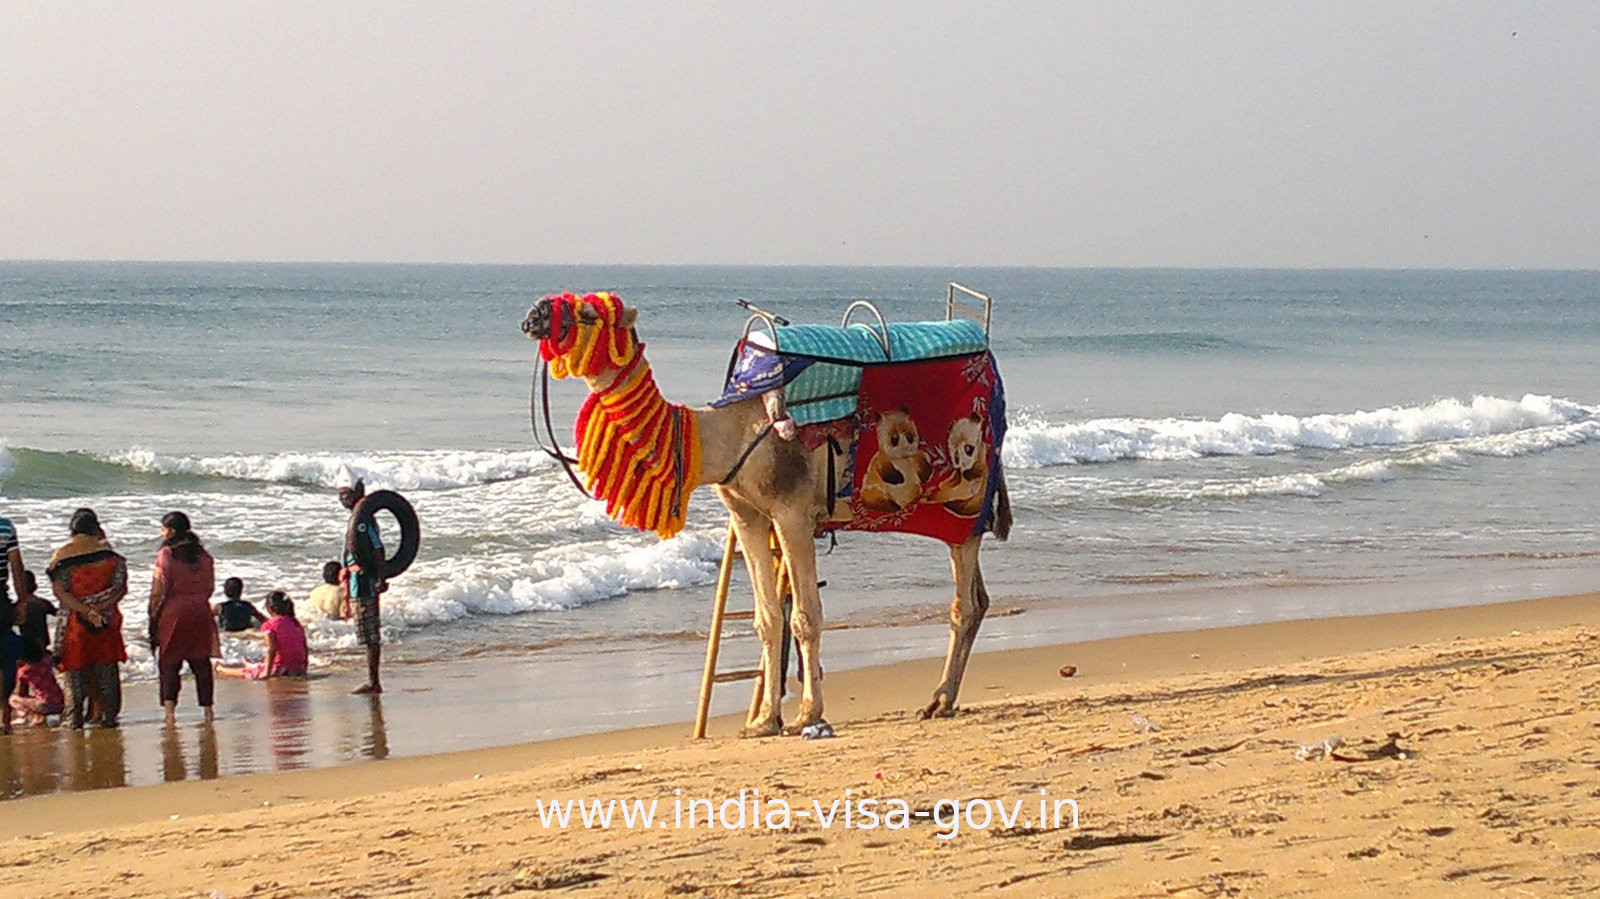 India Visa Puri Beach Orissa 